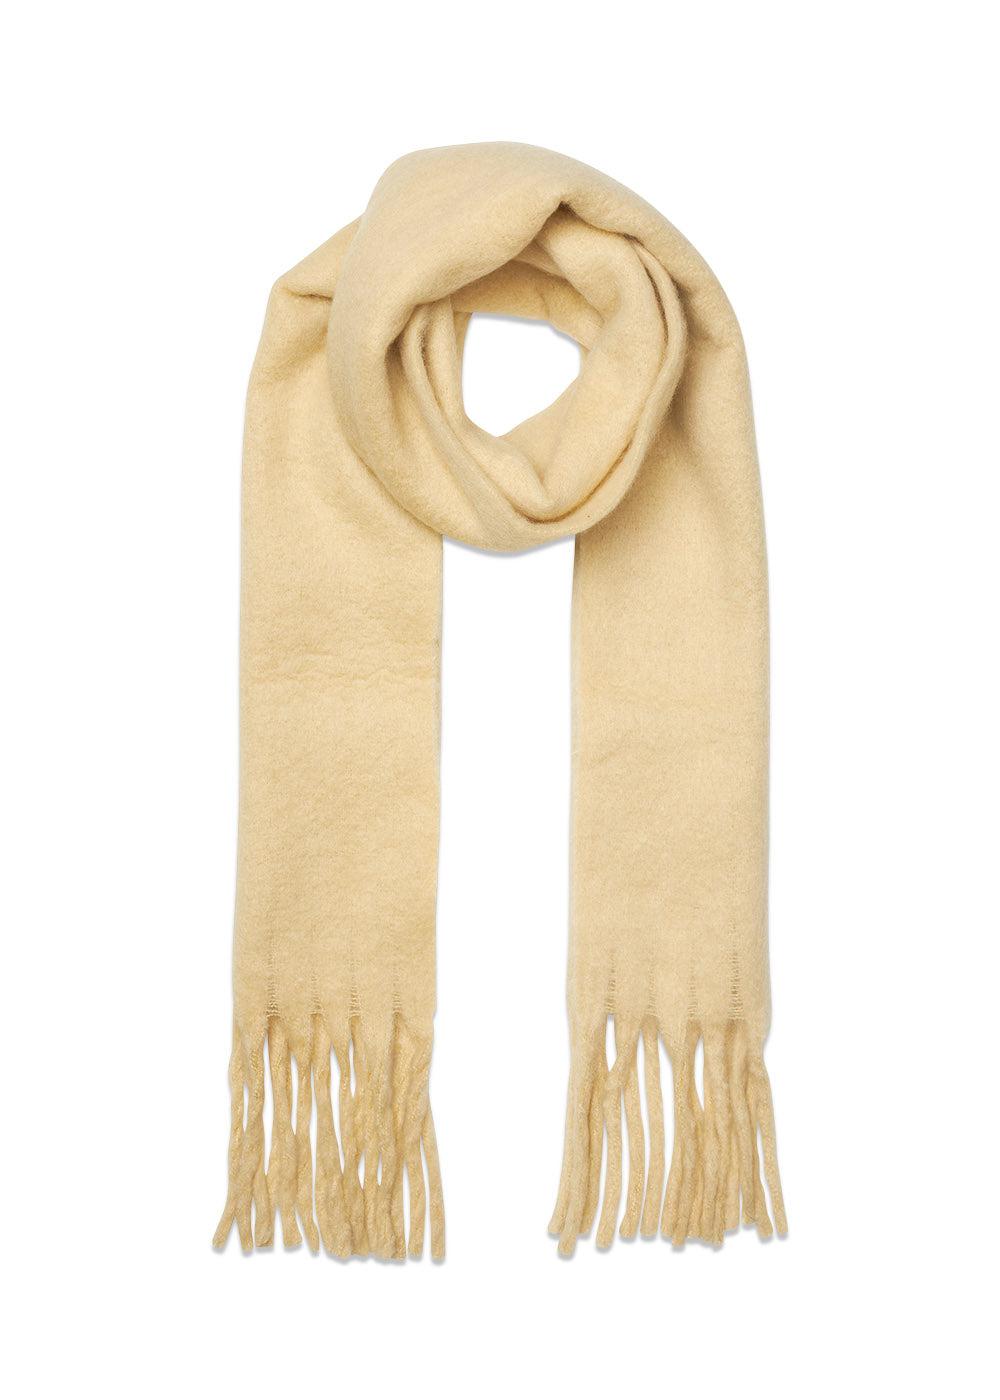 Modströms ArisMD scarf - Buttermilk. Køb accessories her.